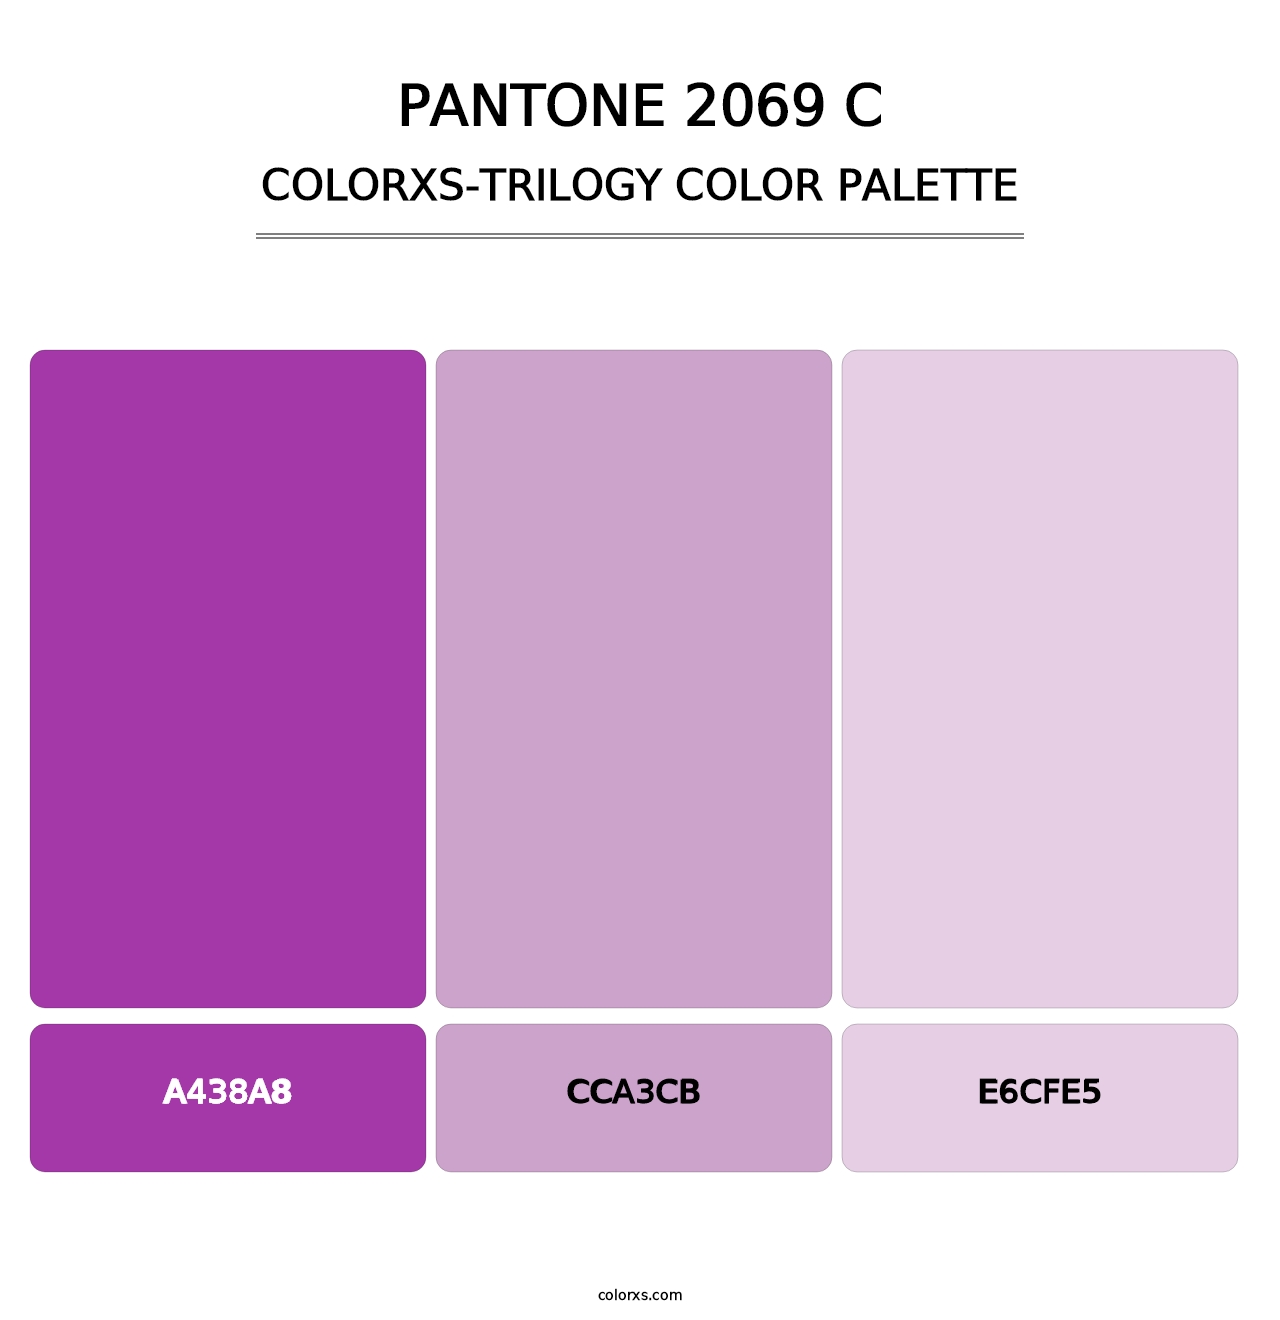 PANTONE 2069 C - Colorxs Trilogy Palette